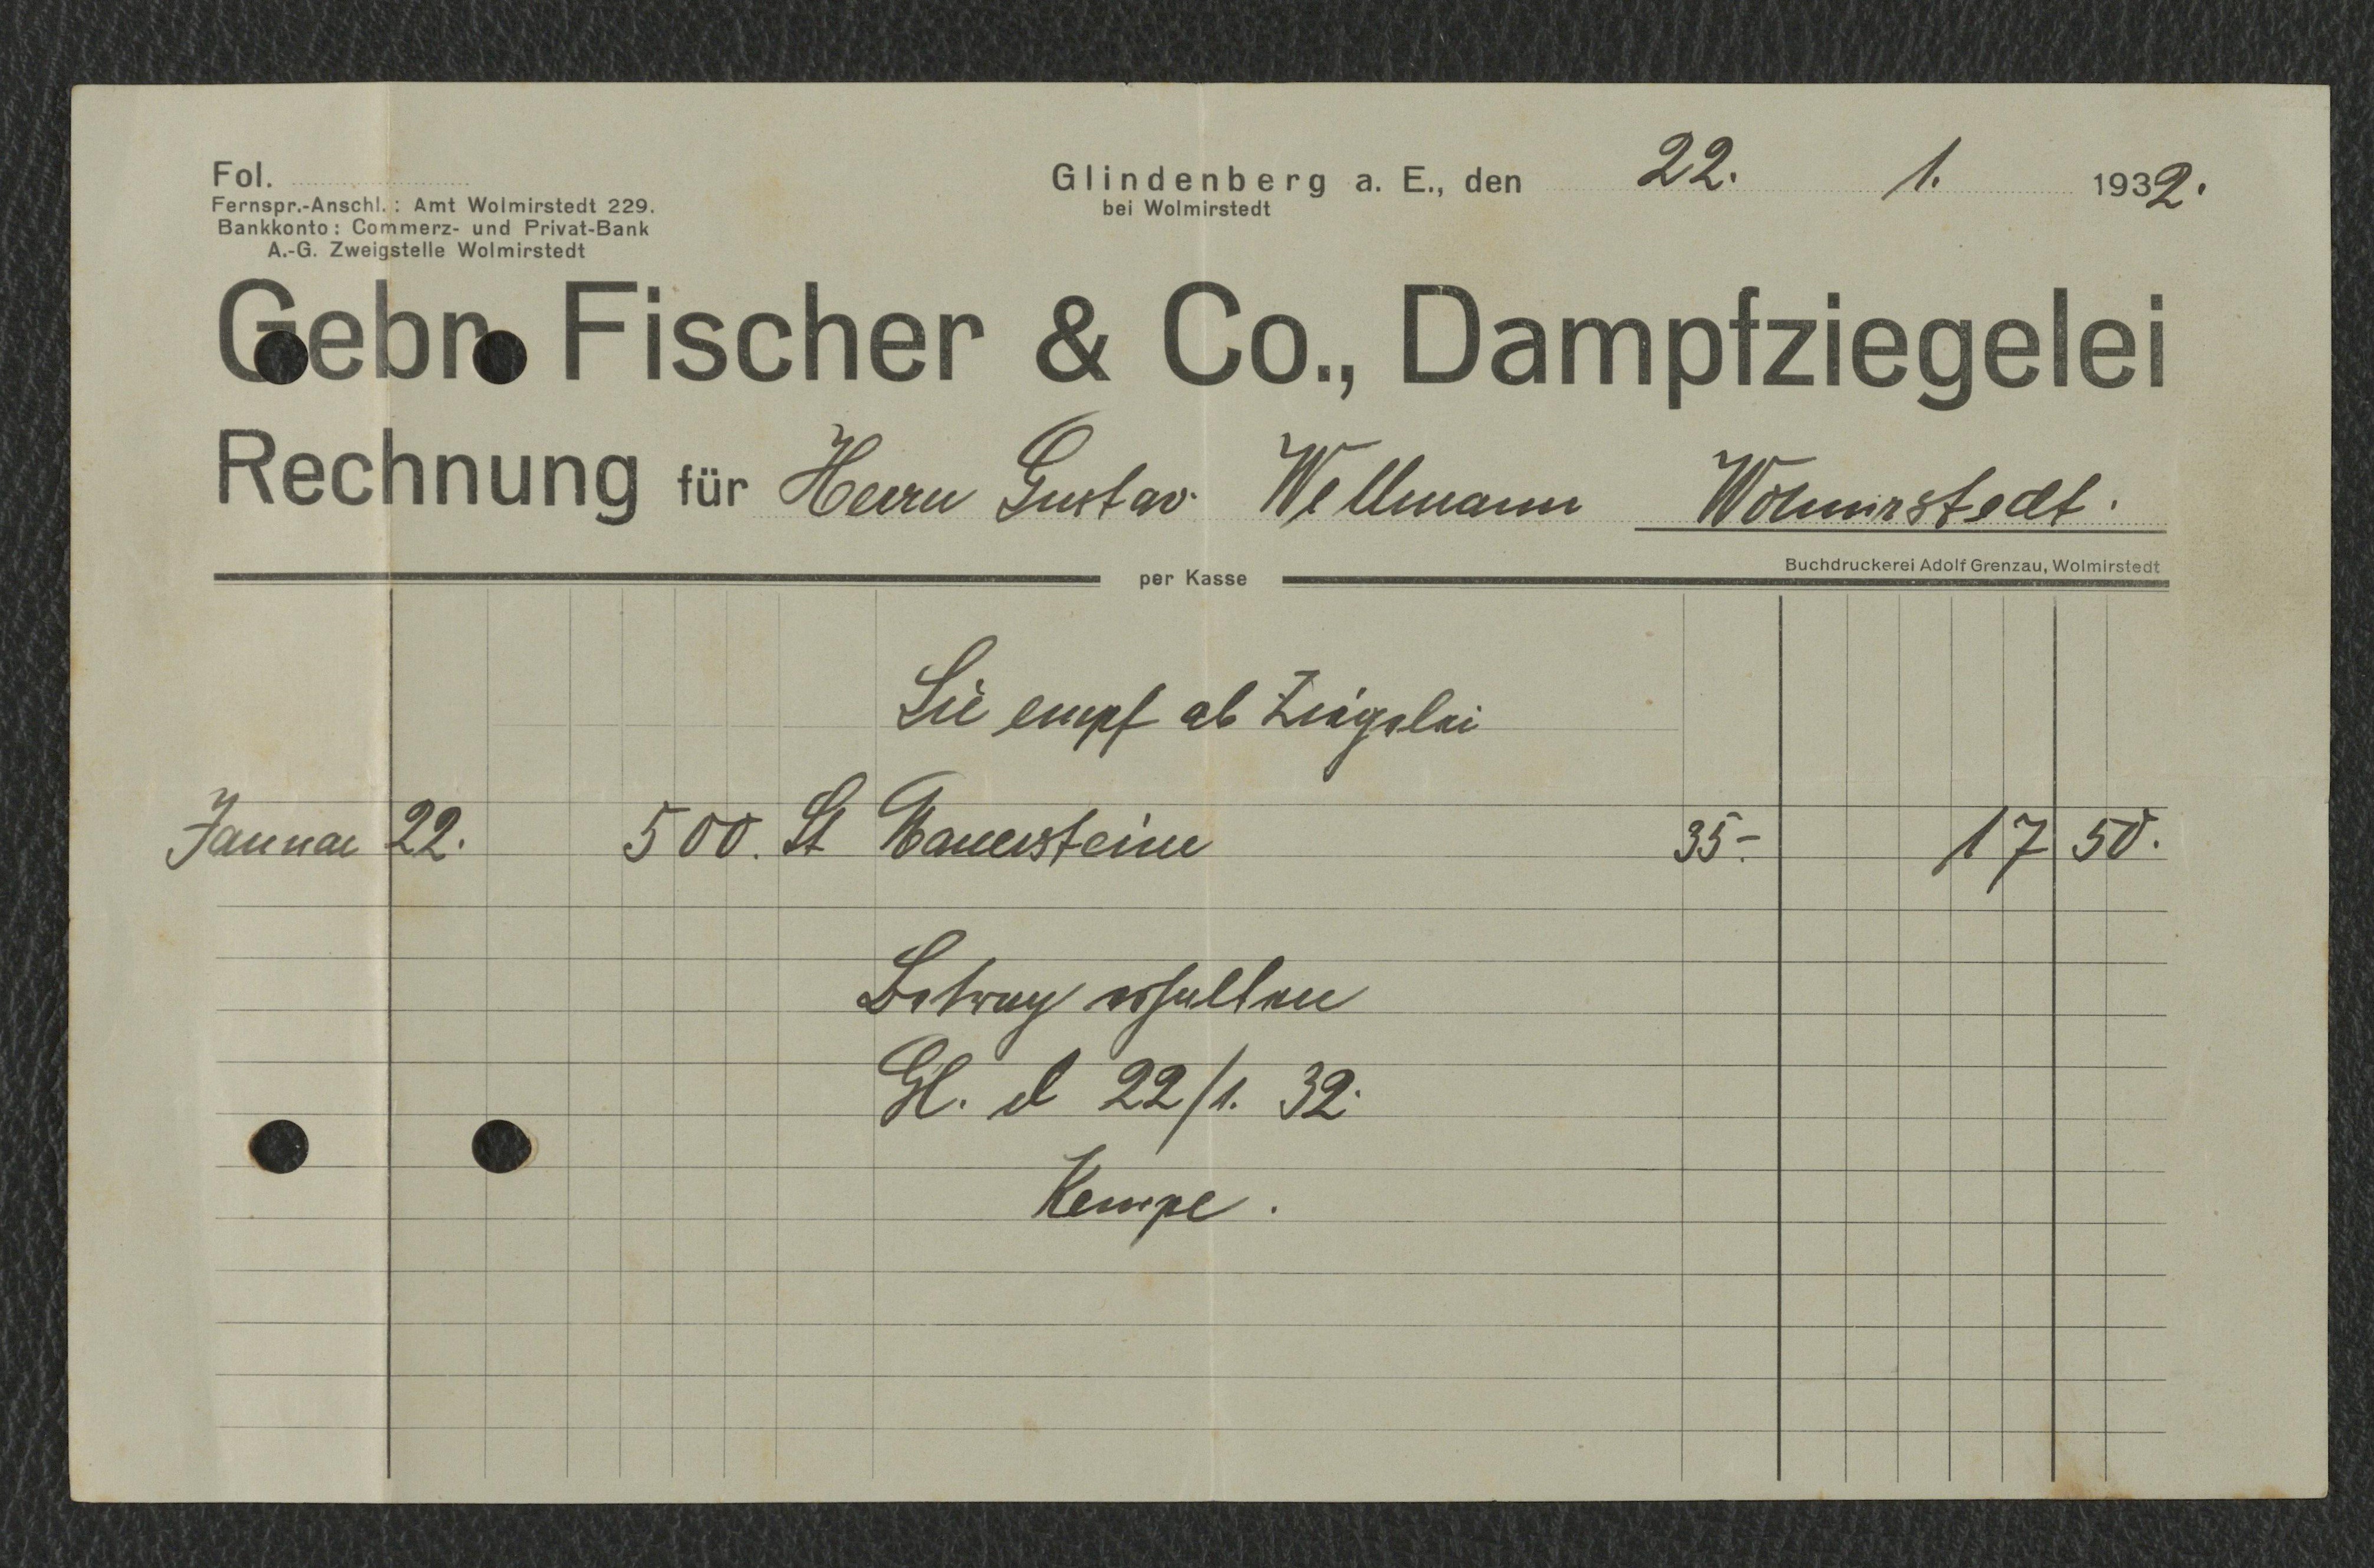 Rechnung Gebrüder Fischer & Co. Dampfzieglei für Gustav Willmann, Wolmirstedt vom 22.01.1932 (Museum Wolmirstedt RR-F)